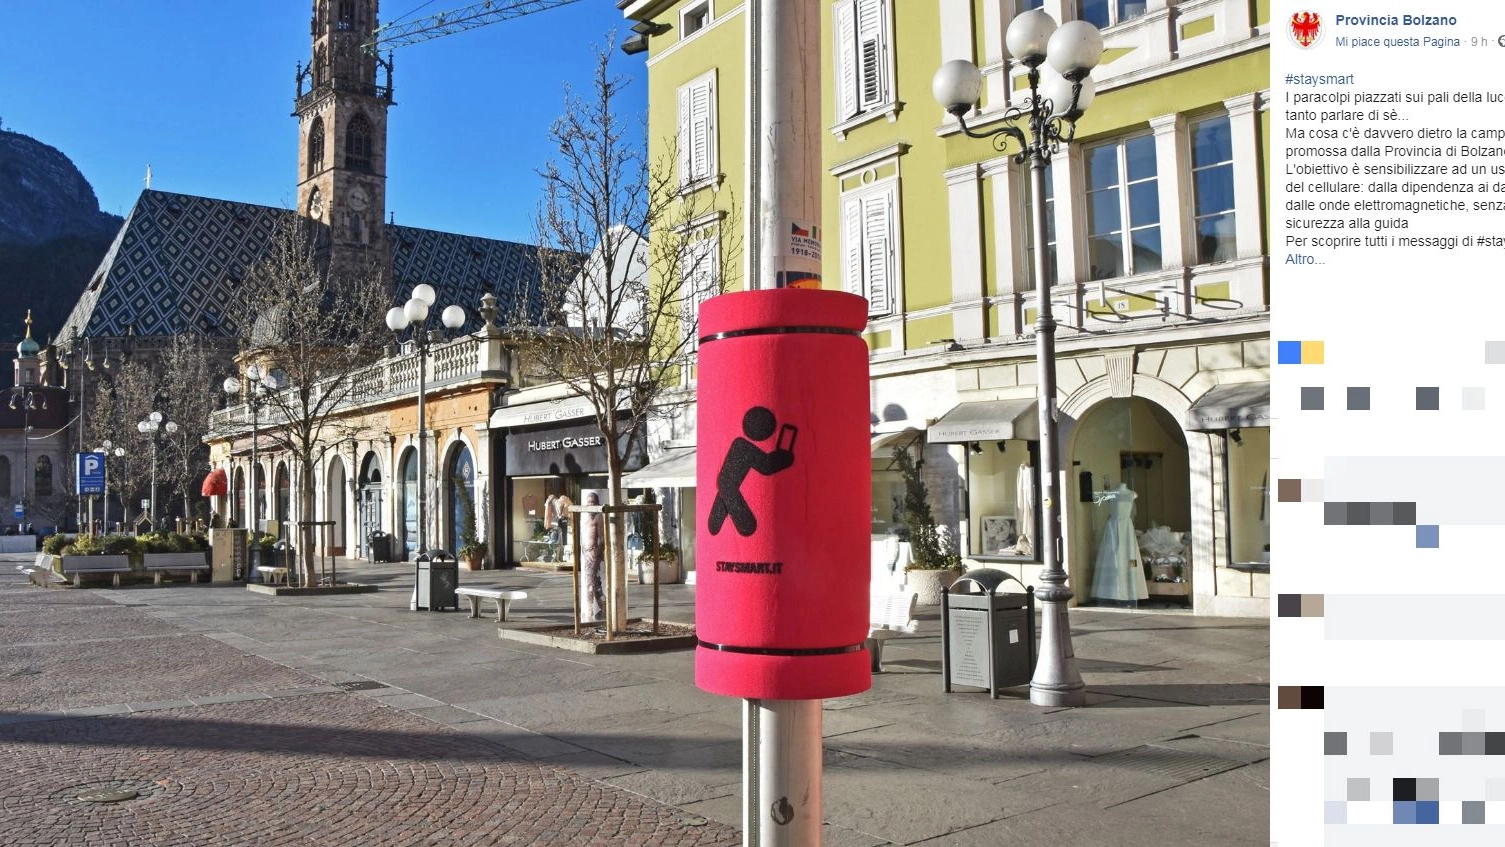 Paracolpi piazzati sui pali della luce a Bolzano (Facebook)